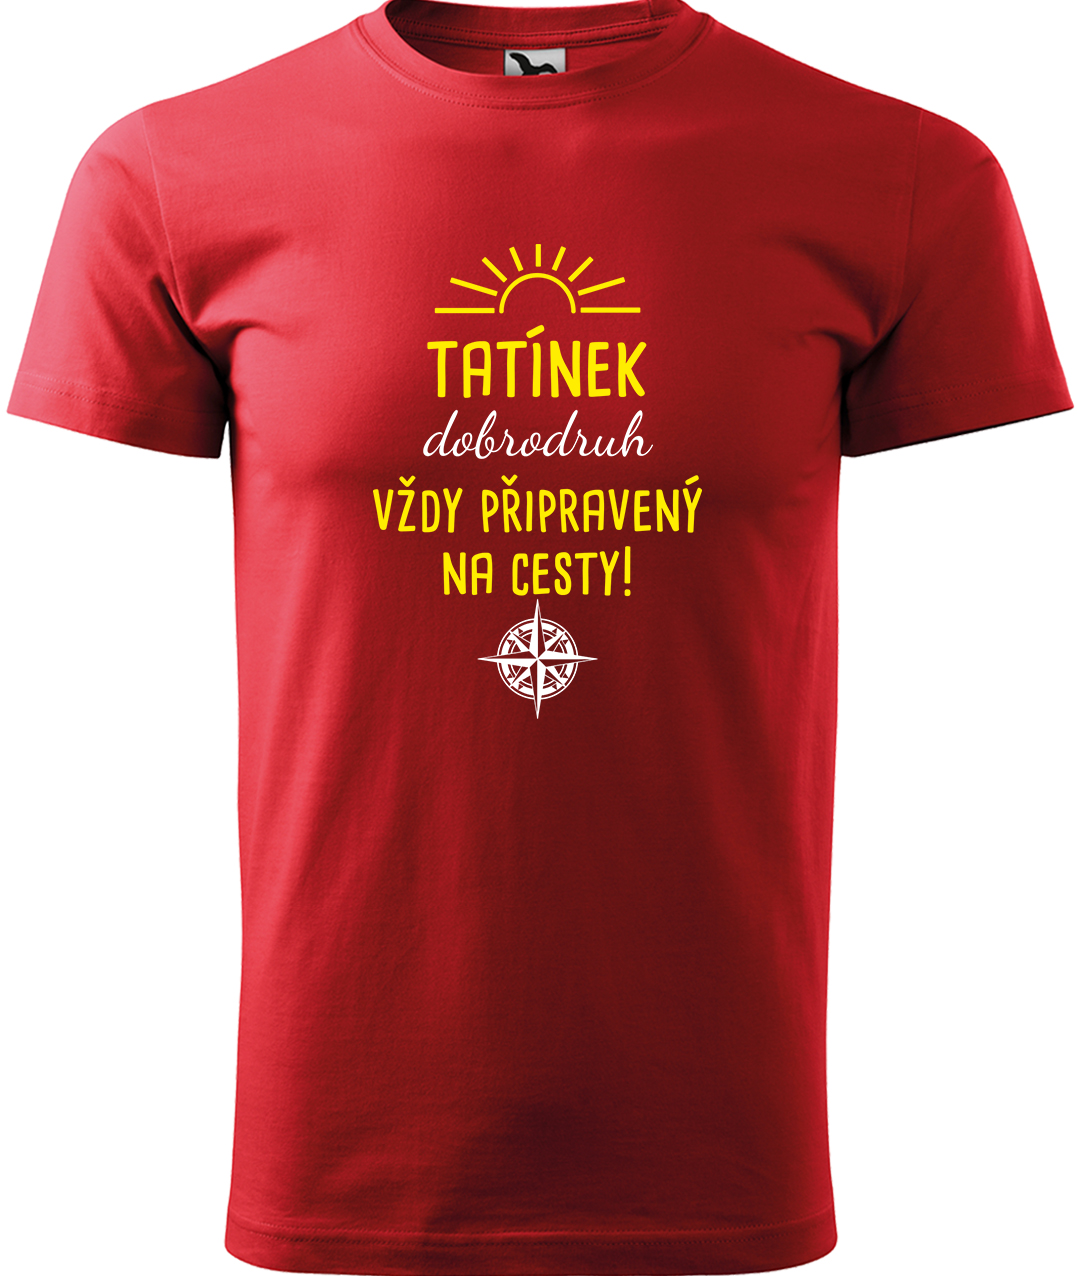 Pánské cestovatelské tričko - Tatínek dobrodruh Velikost: M, Barva: Červená (07), Střih: pánský